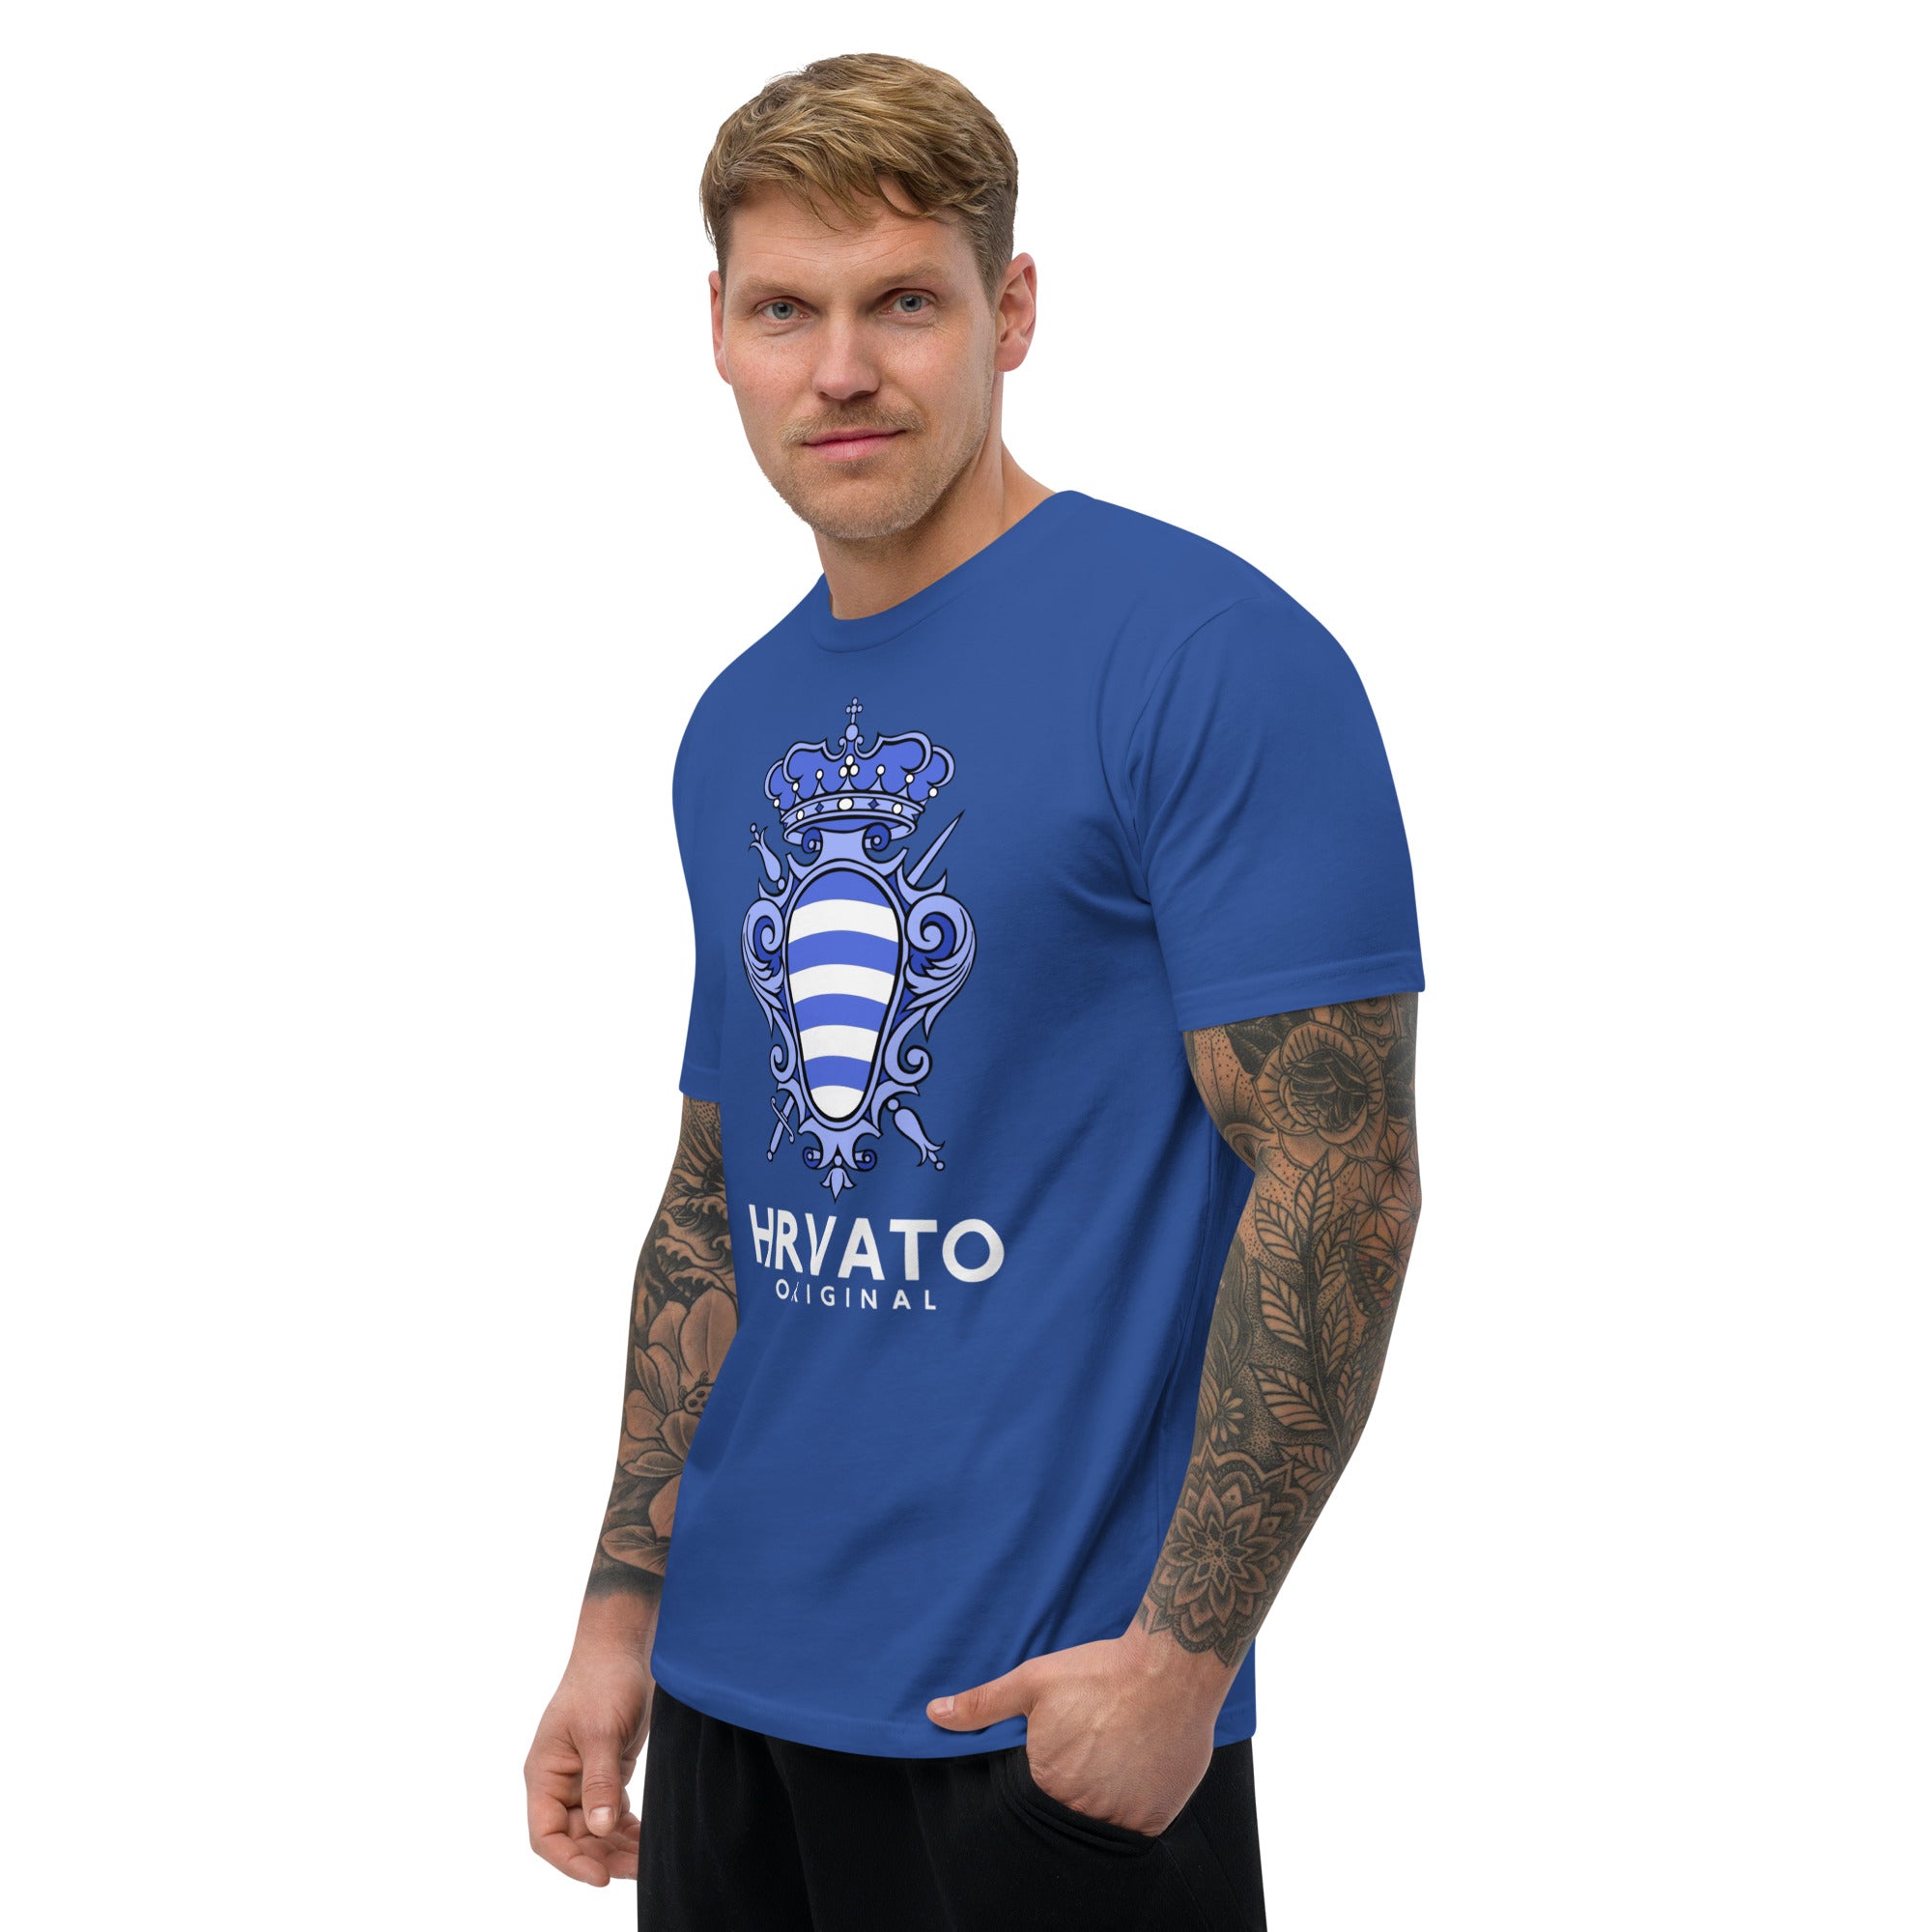 Dubrovnik Blue Crest Men's T-shirt - Authentic Croatian Design